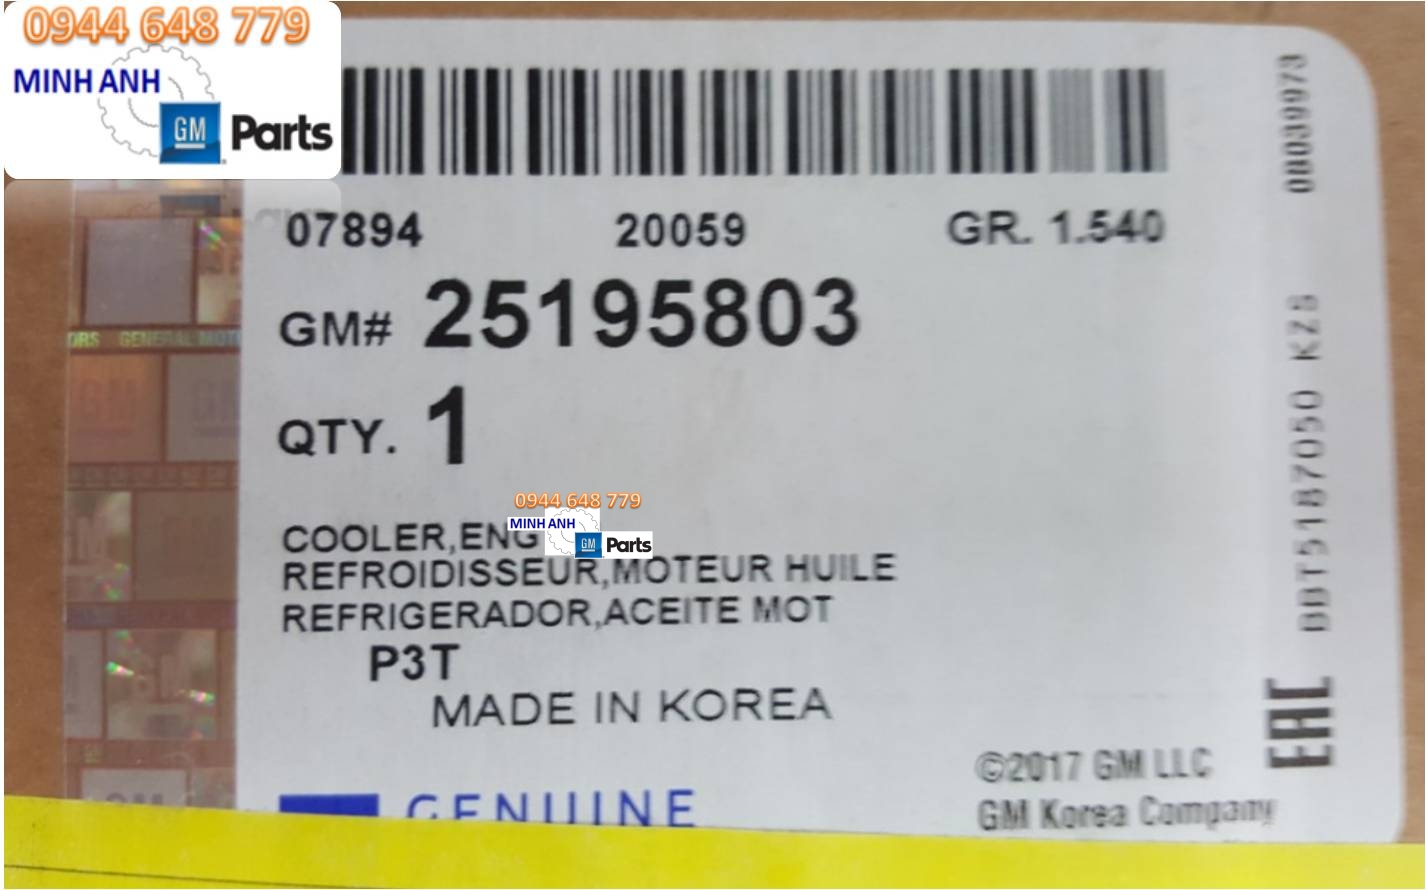 Tên sản phẩm: Két sinh hàn Cruze chính hãng GM
Mã sản phẩm: GM# 25195803
Xuất xứ: Nhập khẩu trực tiếp GM Hàn Quốc
Dùng cho các xe: Cruze 2017
Cam kết